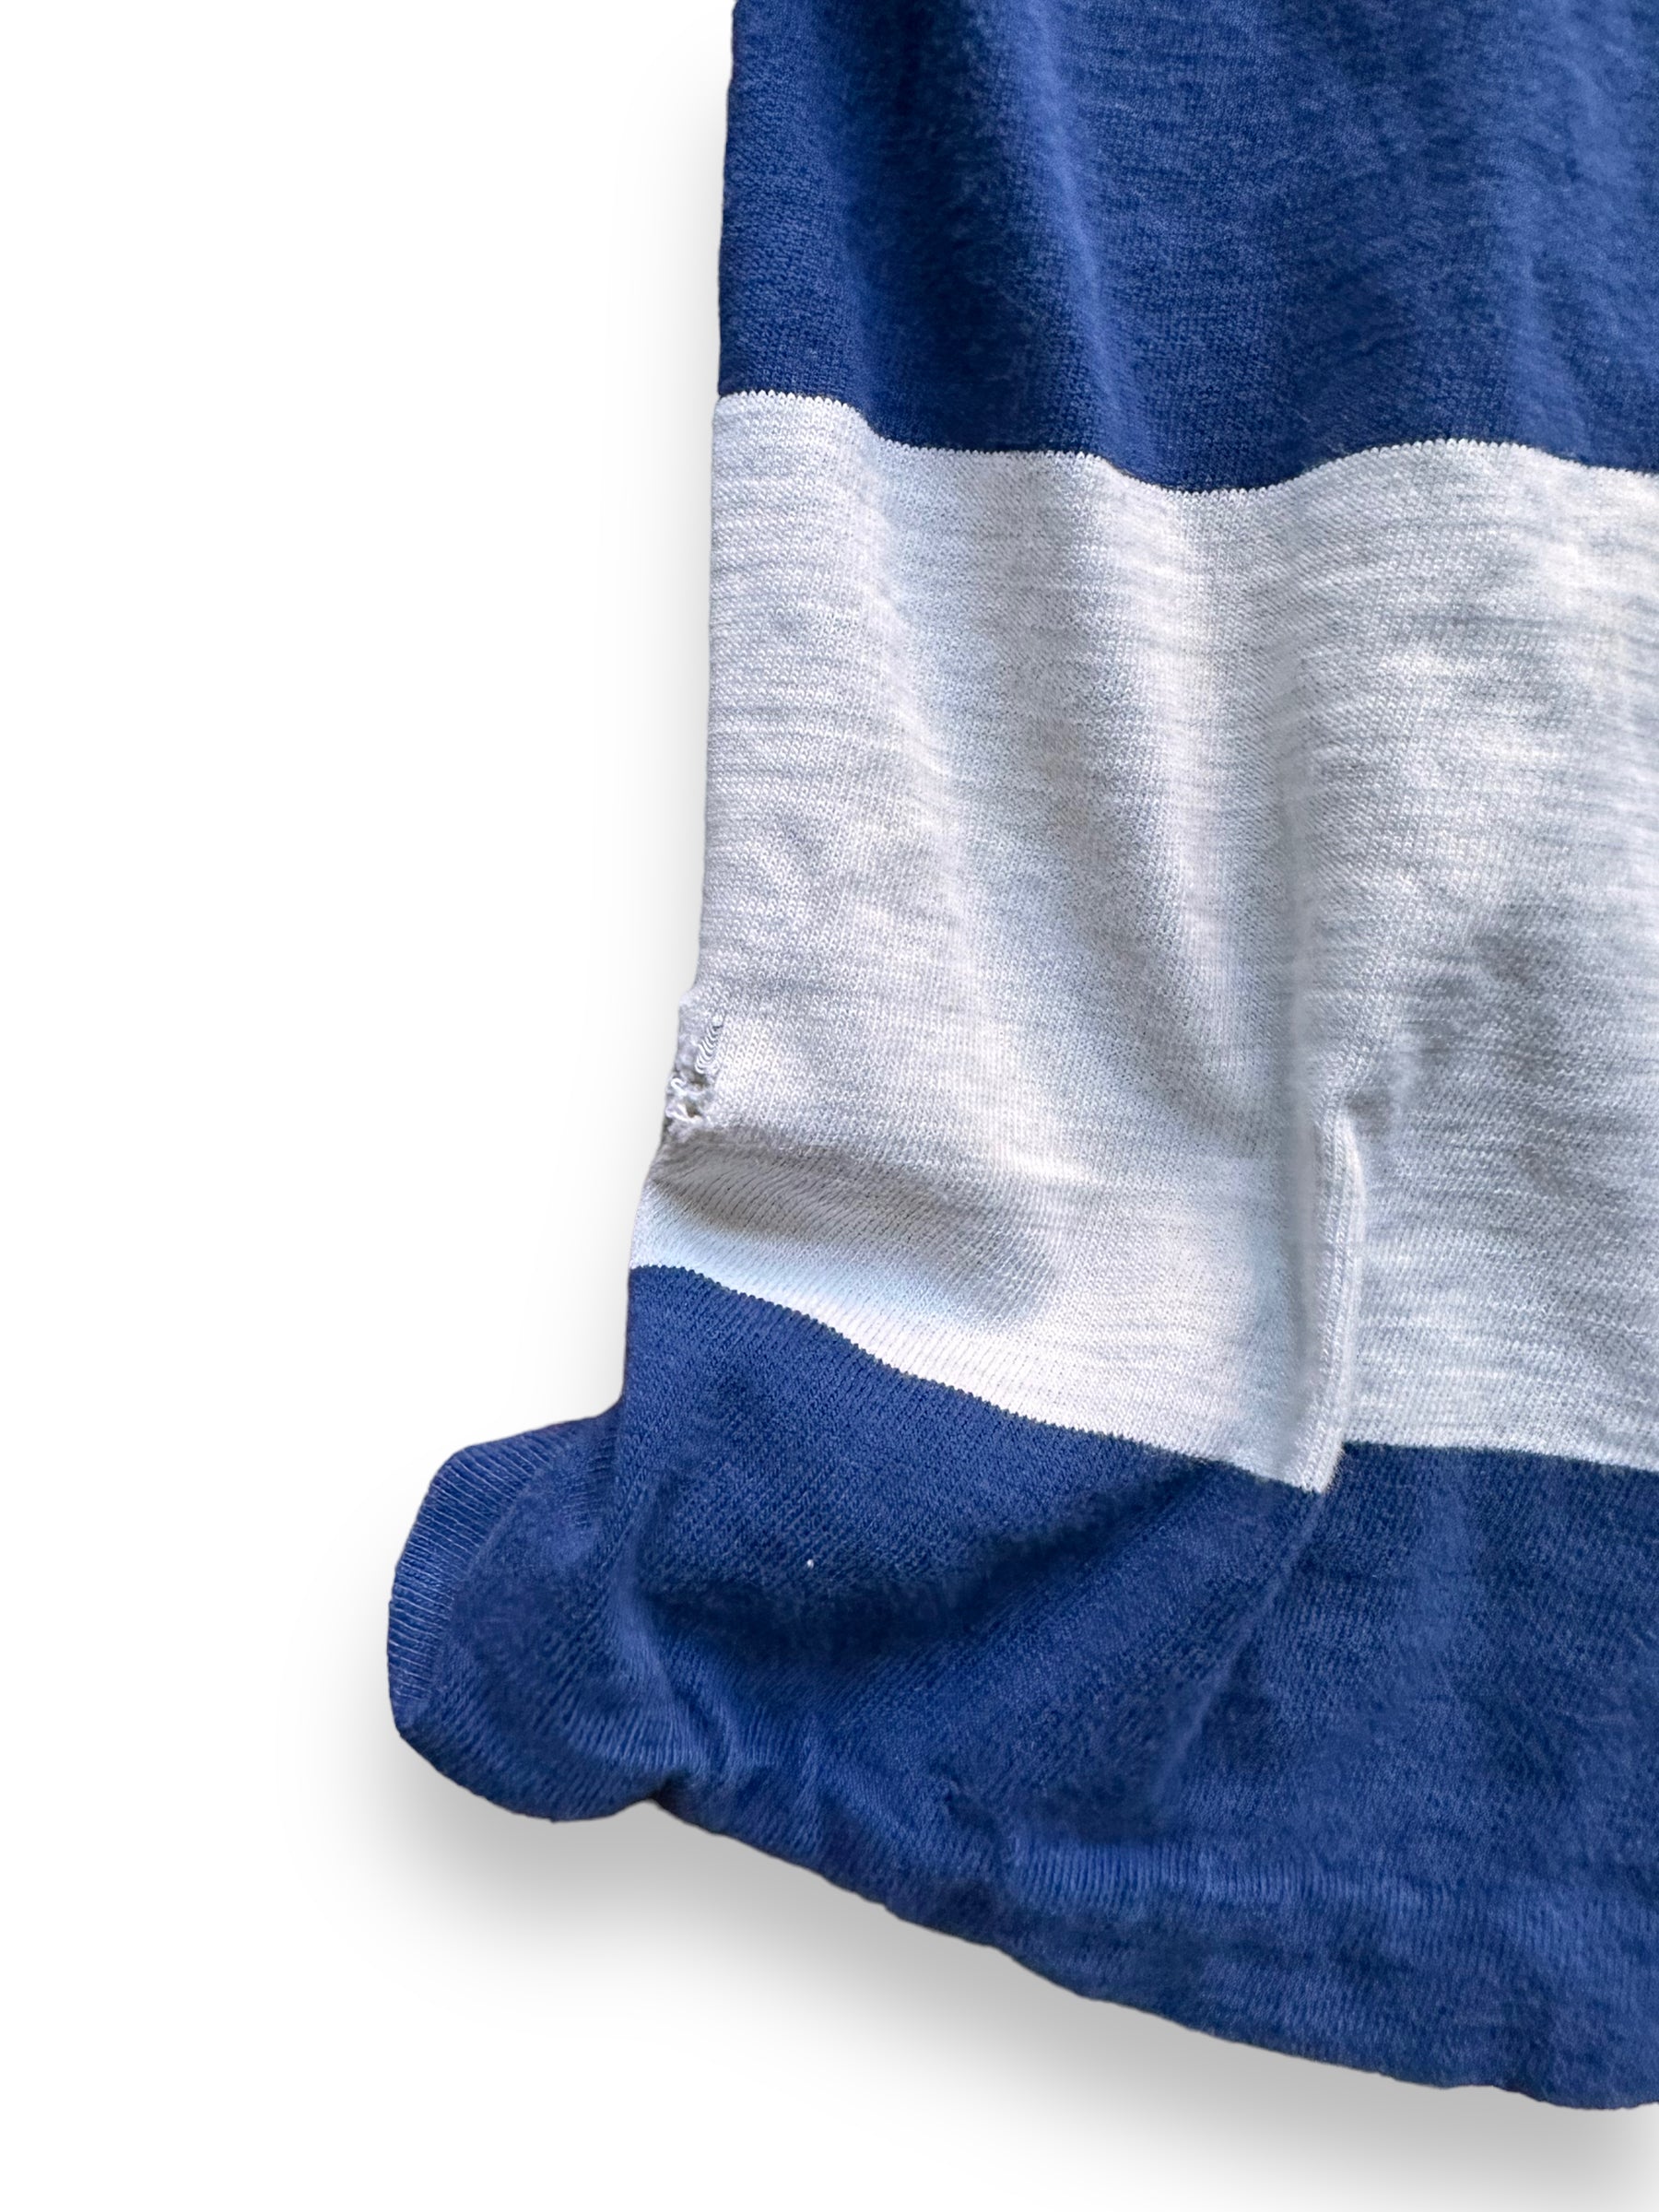 Snags on Bottom of Vintage Blue Striped Surfer Shirt SZ M | Vintage Striped Shirt Seattle | Barn Owl Vintage Seattle